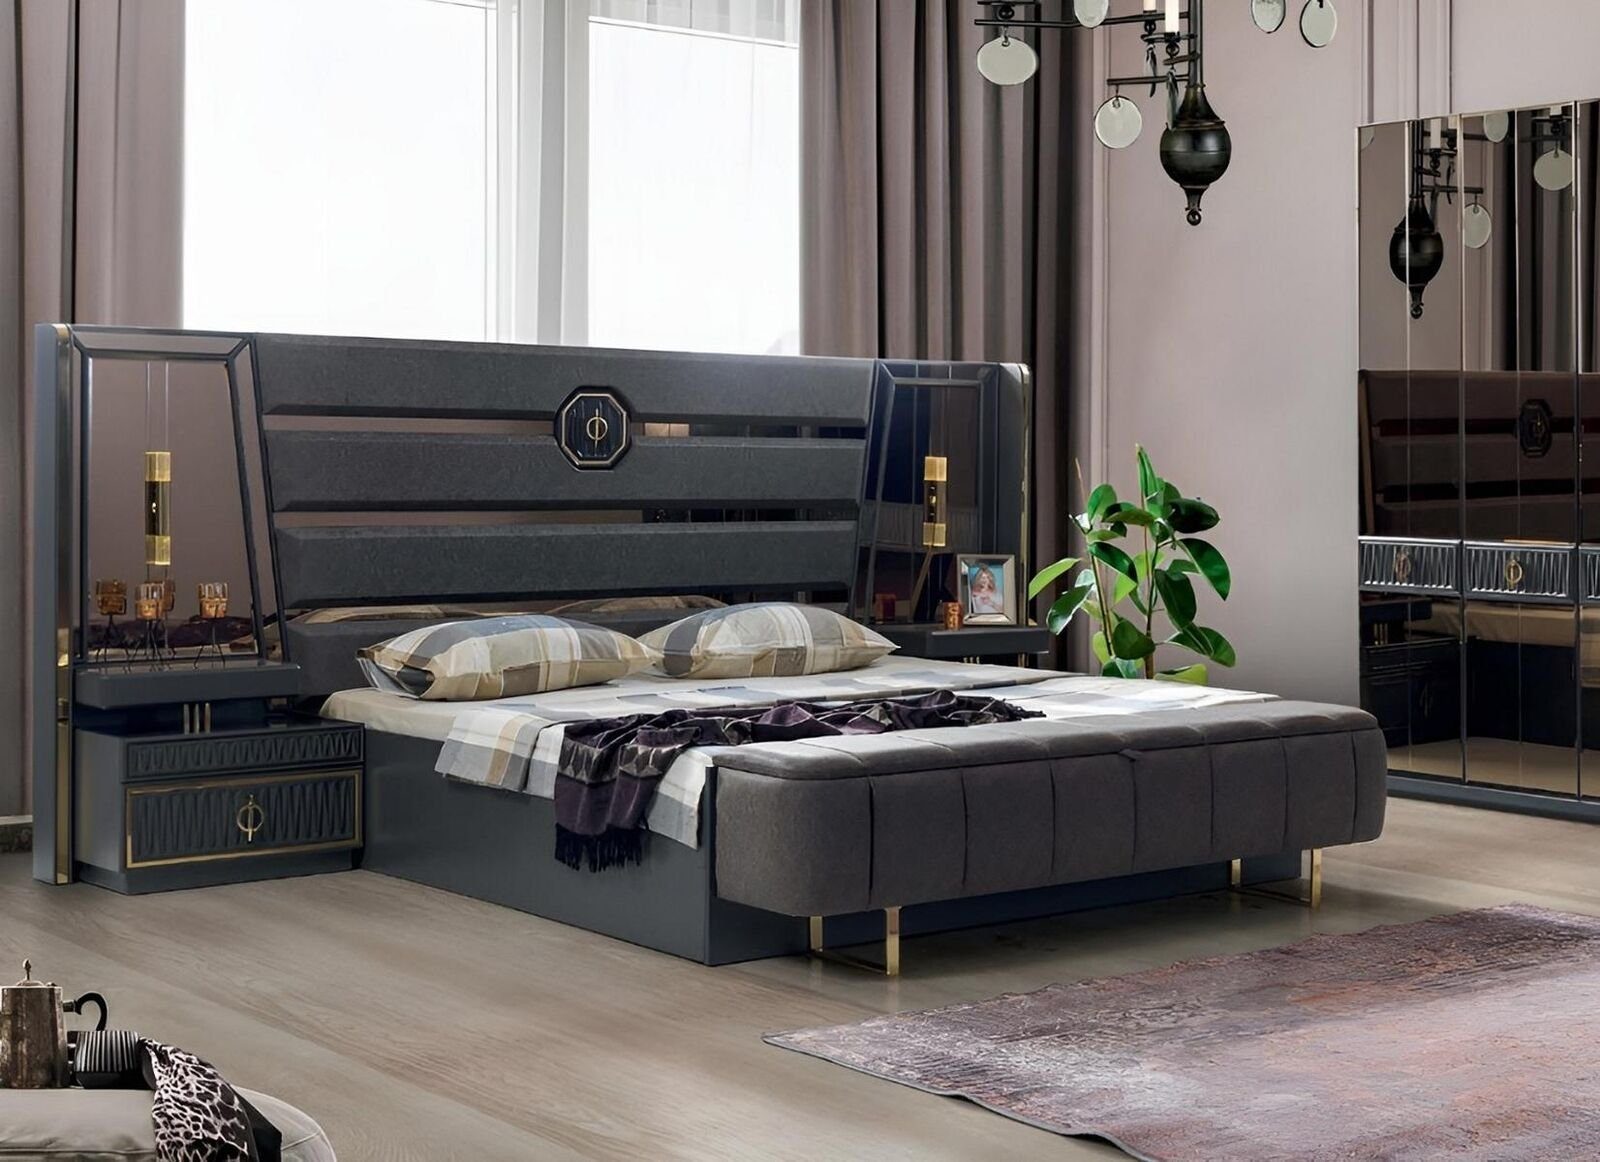 Made (Bett Set JVmoebel Designer Luxus Bett 2x In Bett Nachttische), Nachttische Schlafzimmer-Set 2x Schlafzimmer Europe Möbel, / Doppel